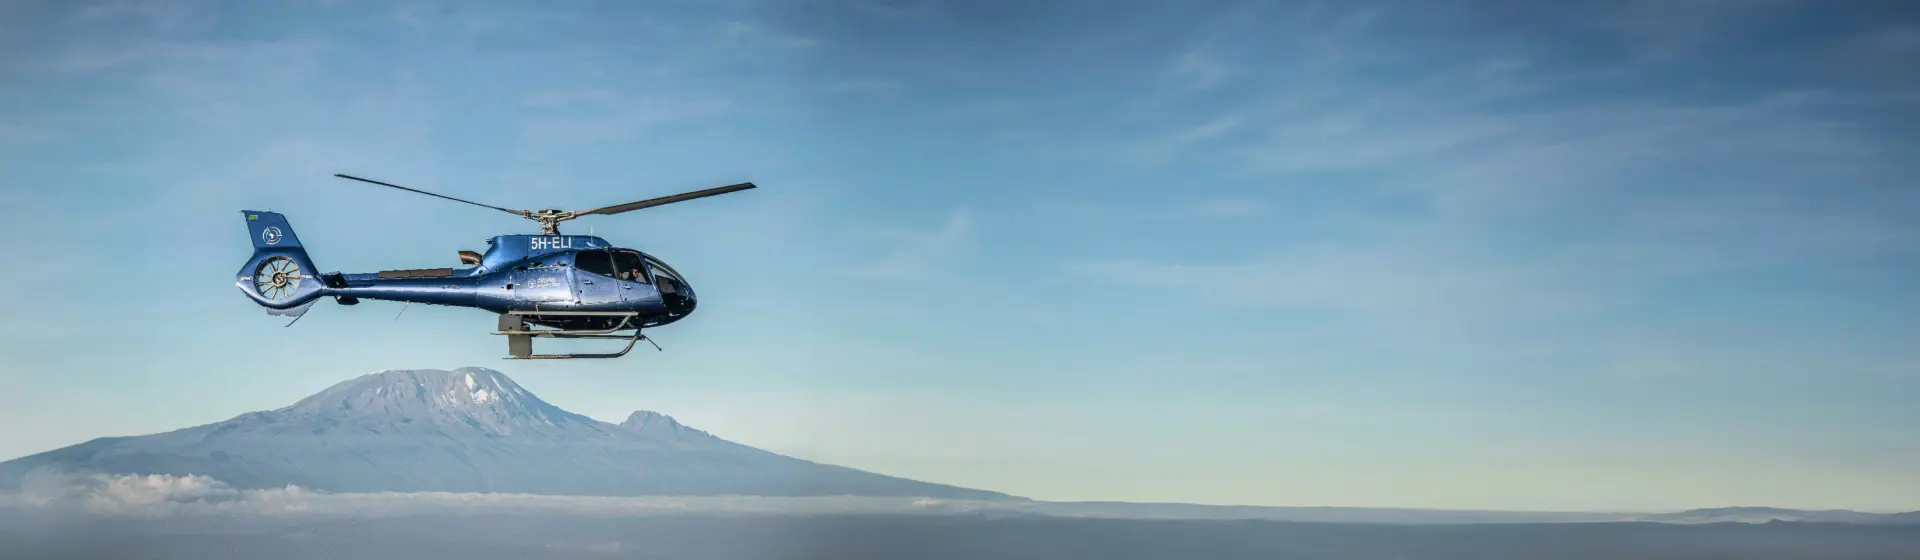 Kilimanjaro Helicopter Tour